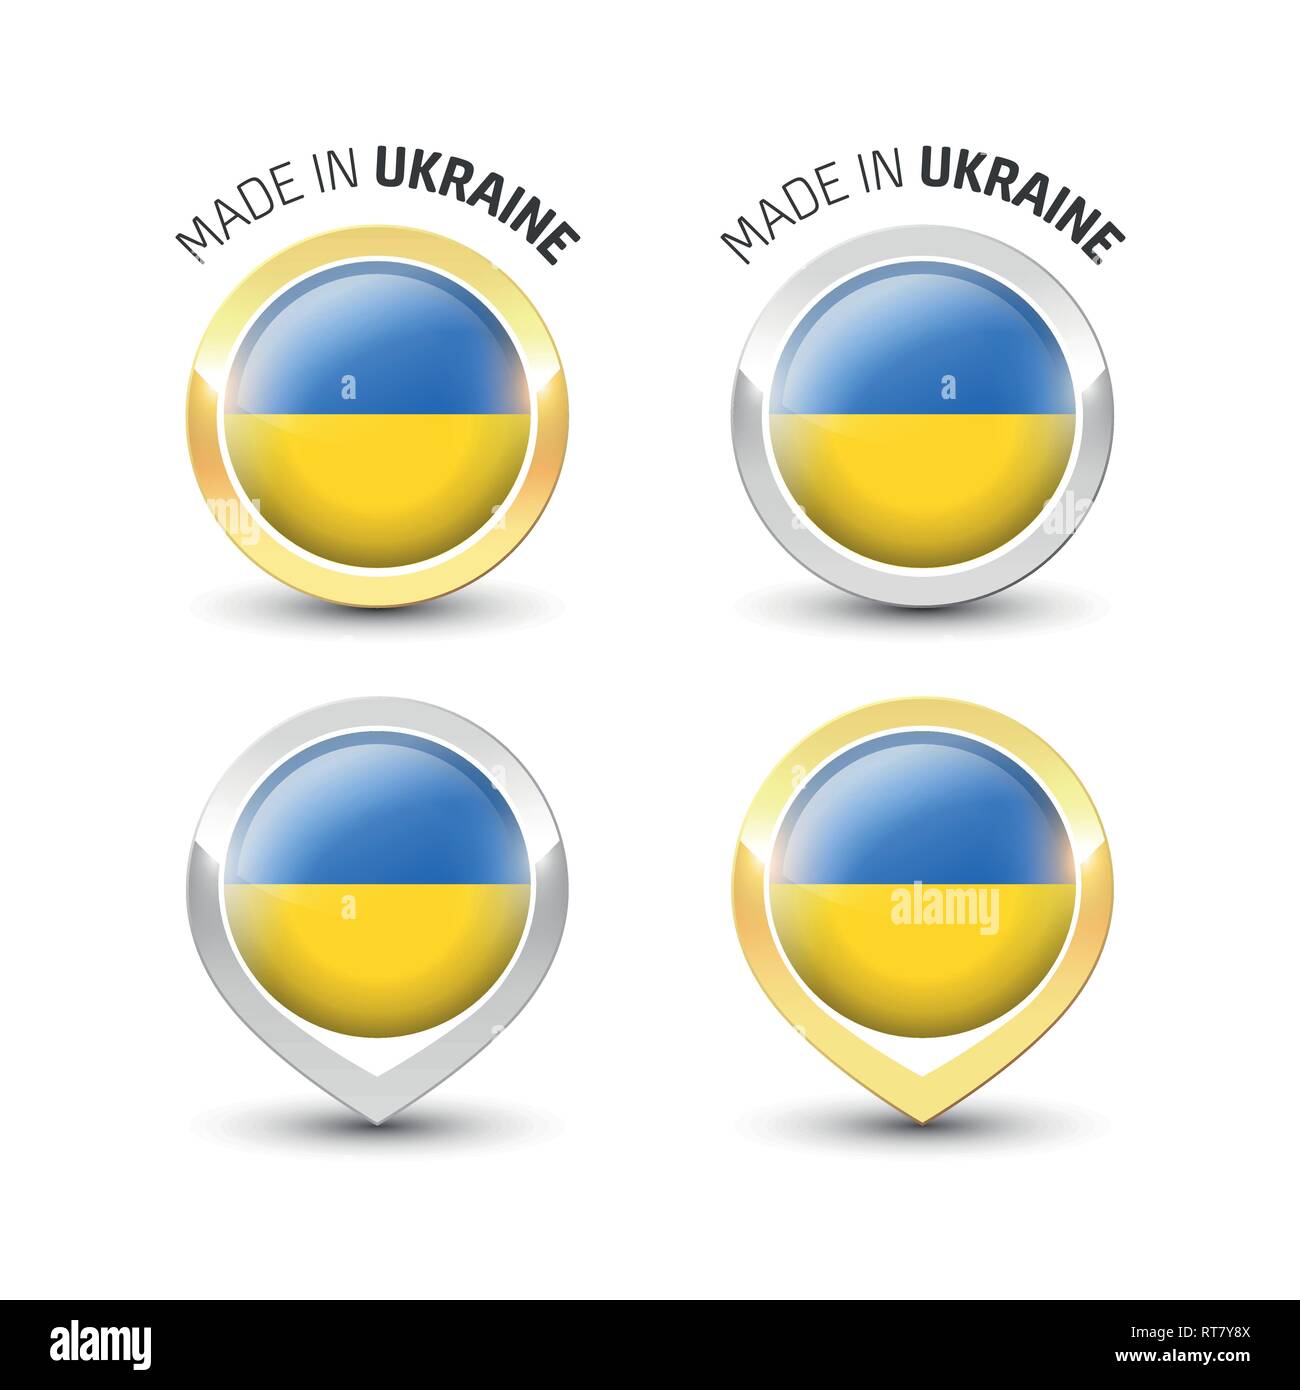 Realizzati in Ucraina - etichetta di garanzia con la bandiera Ucraina all'interno del turno oro e argento icone. Illustrazione Vettoriale